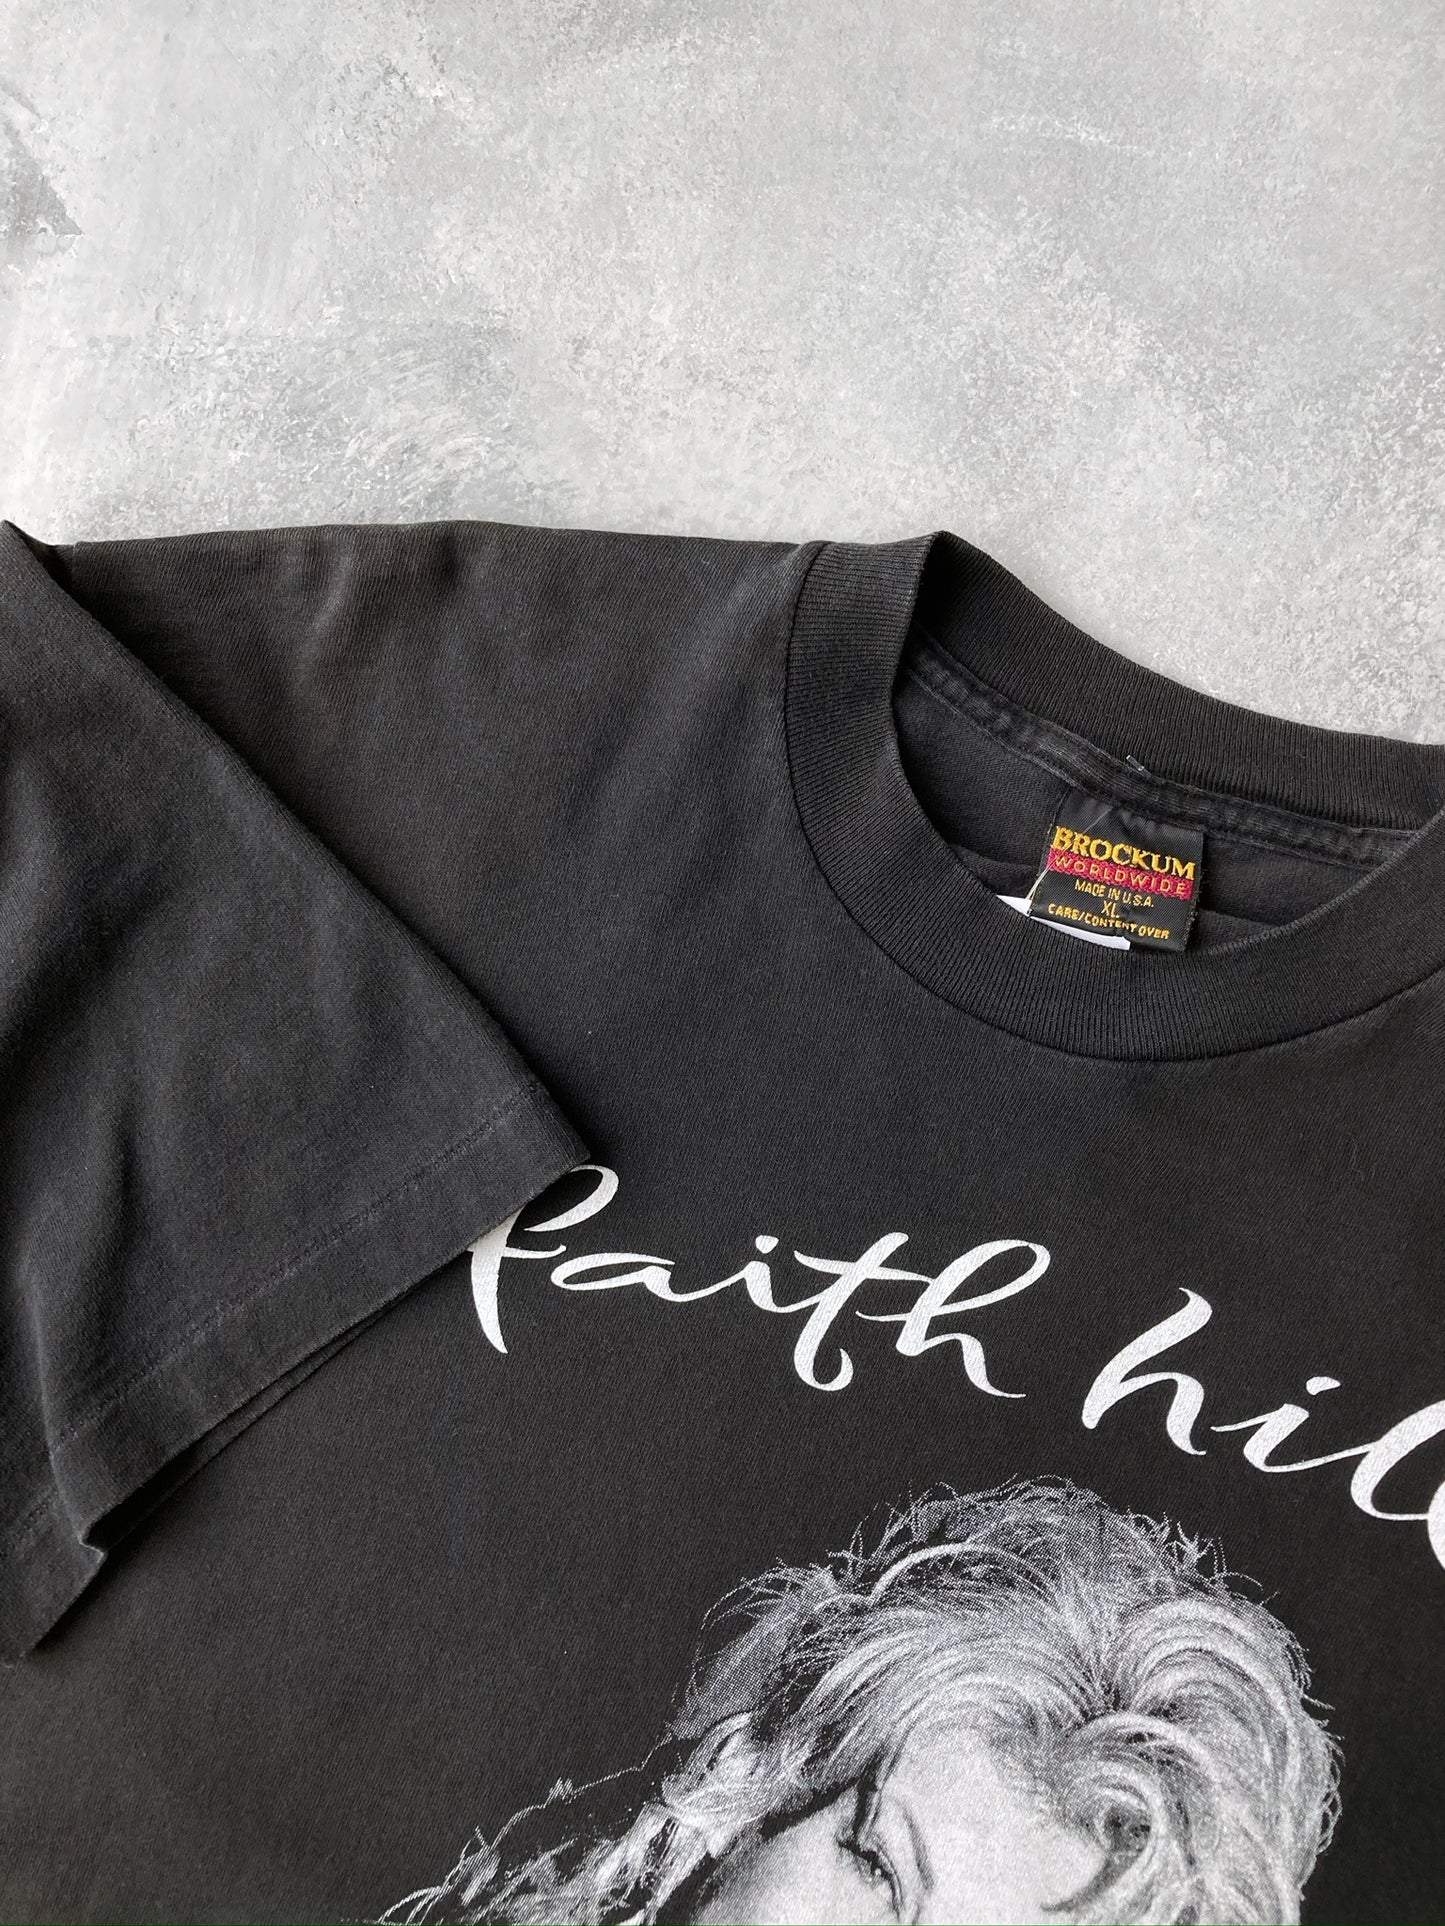 Faith Hill T-Shirt '95 - Large